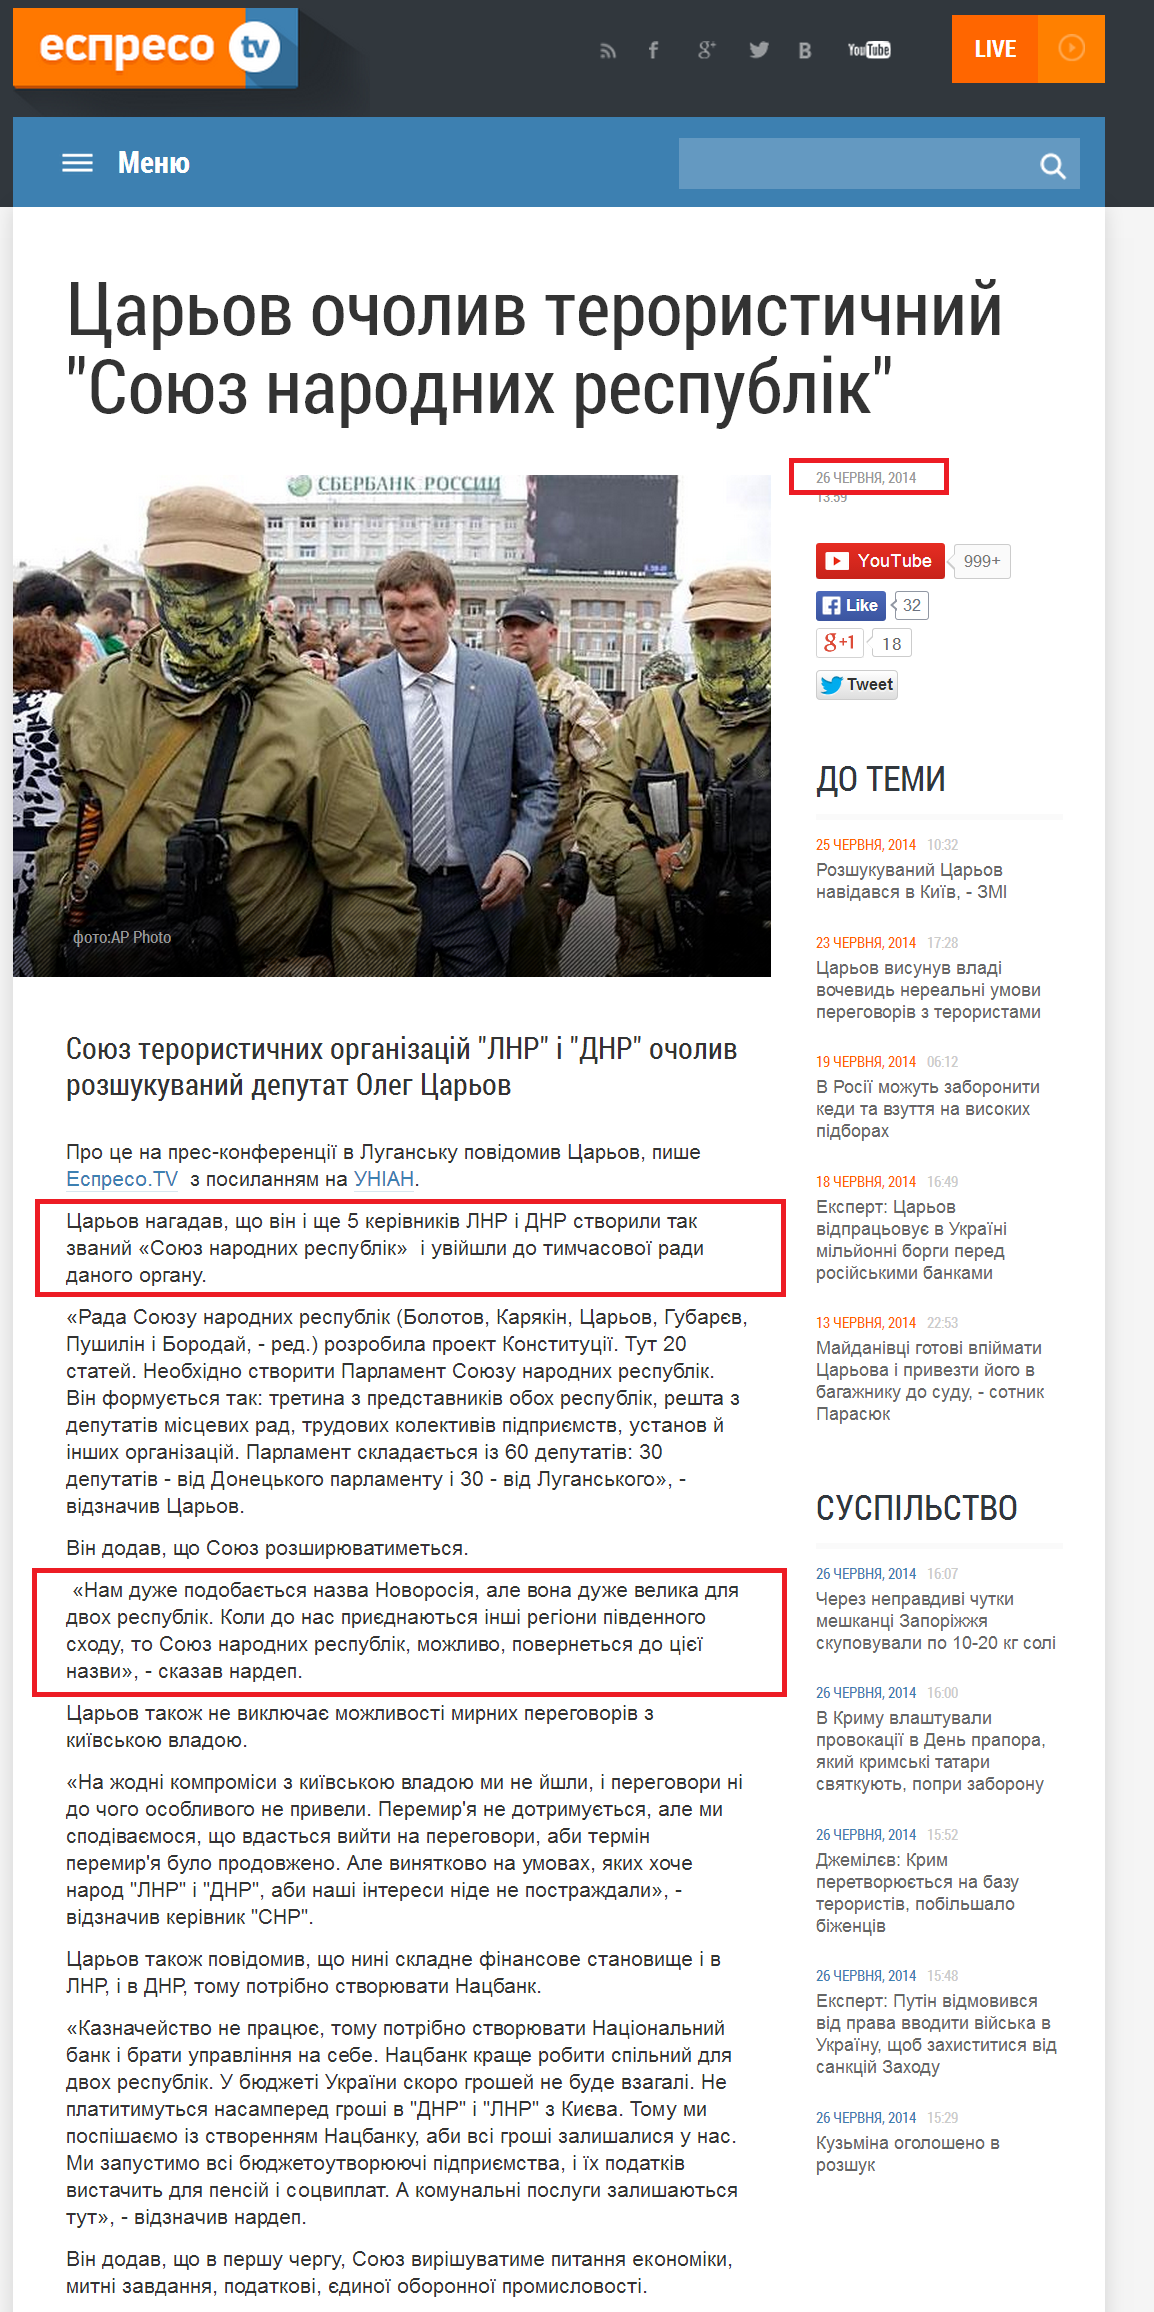 http://espreso.tv/news/2014/06/26/carov_ocholyv_terorystychnyy_soyuz_narodnykh_respublik